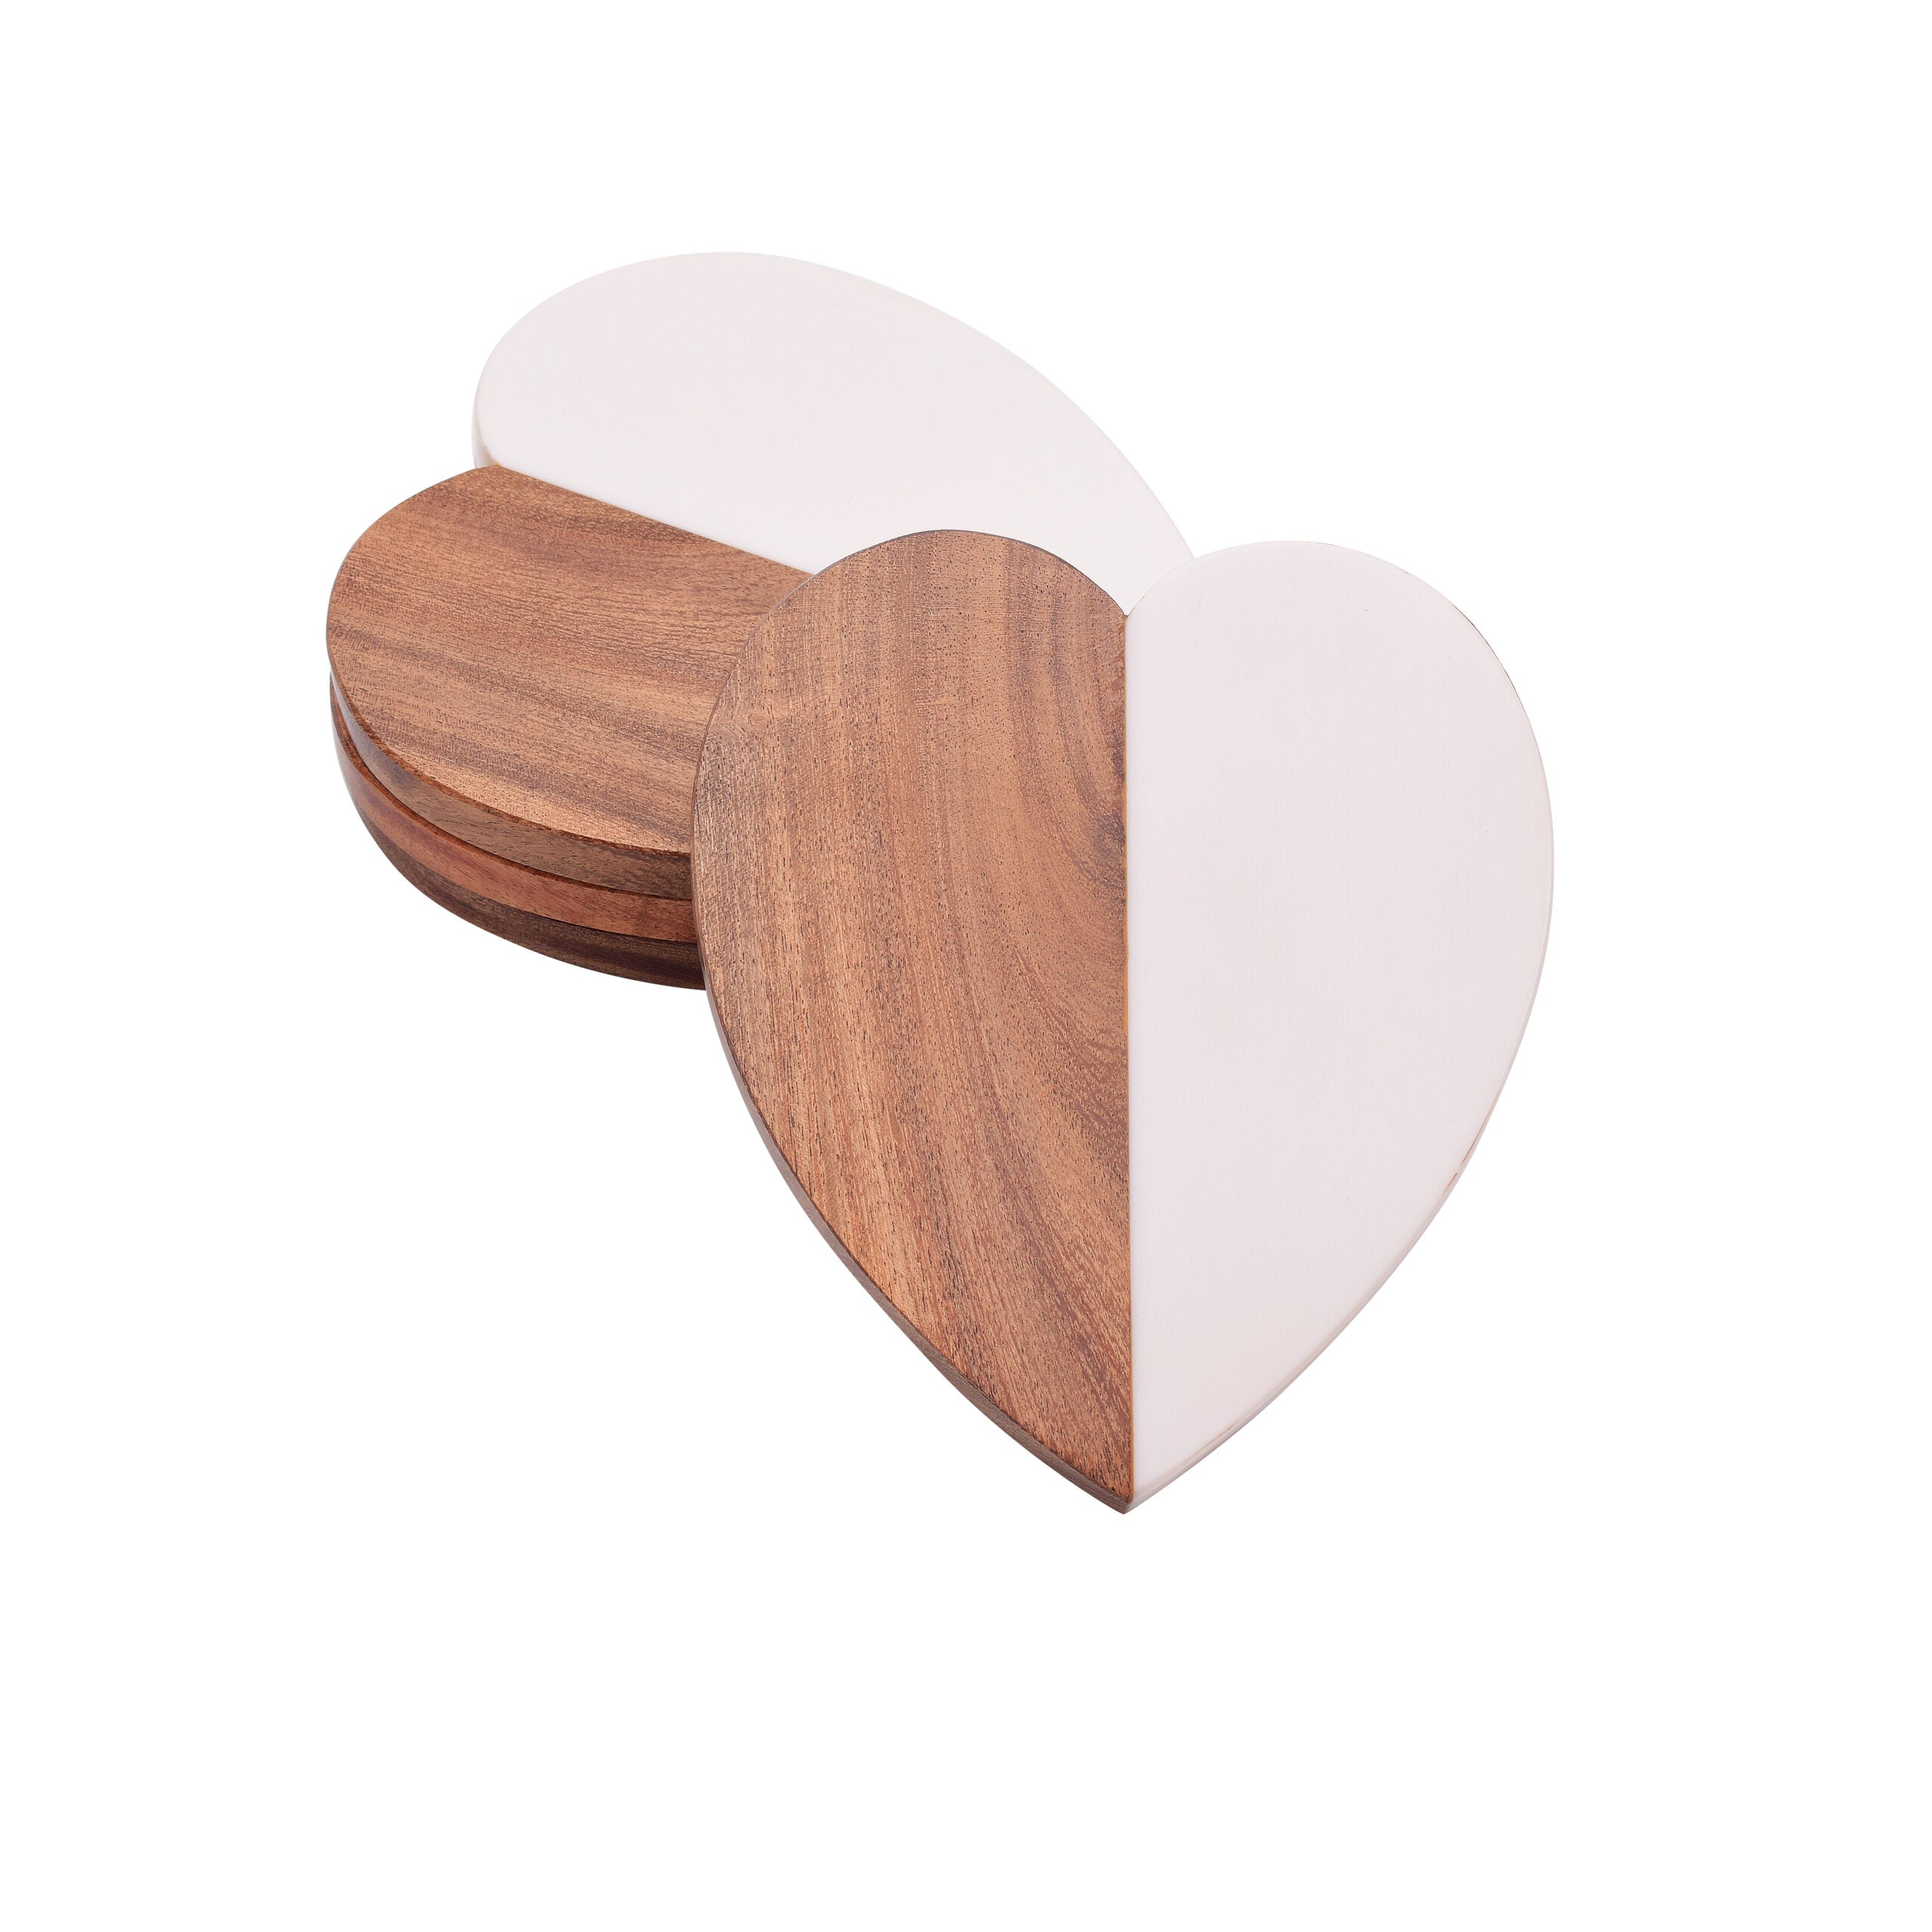 Zara Heart Coaster